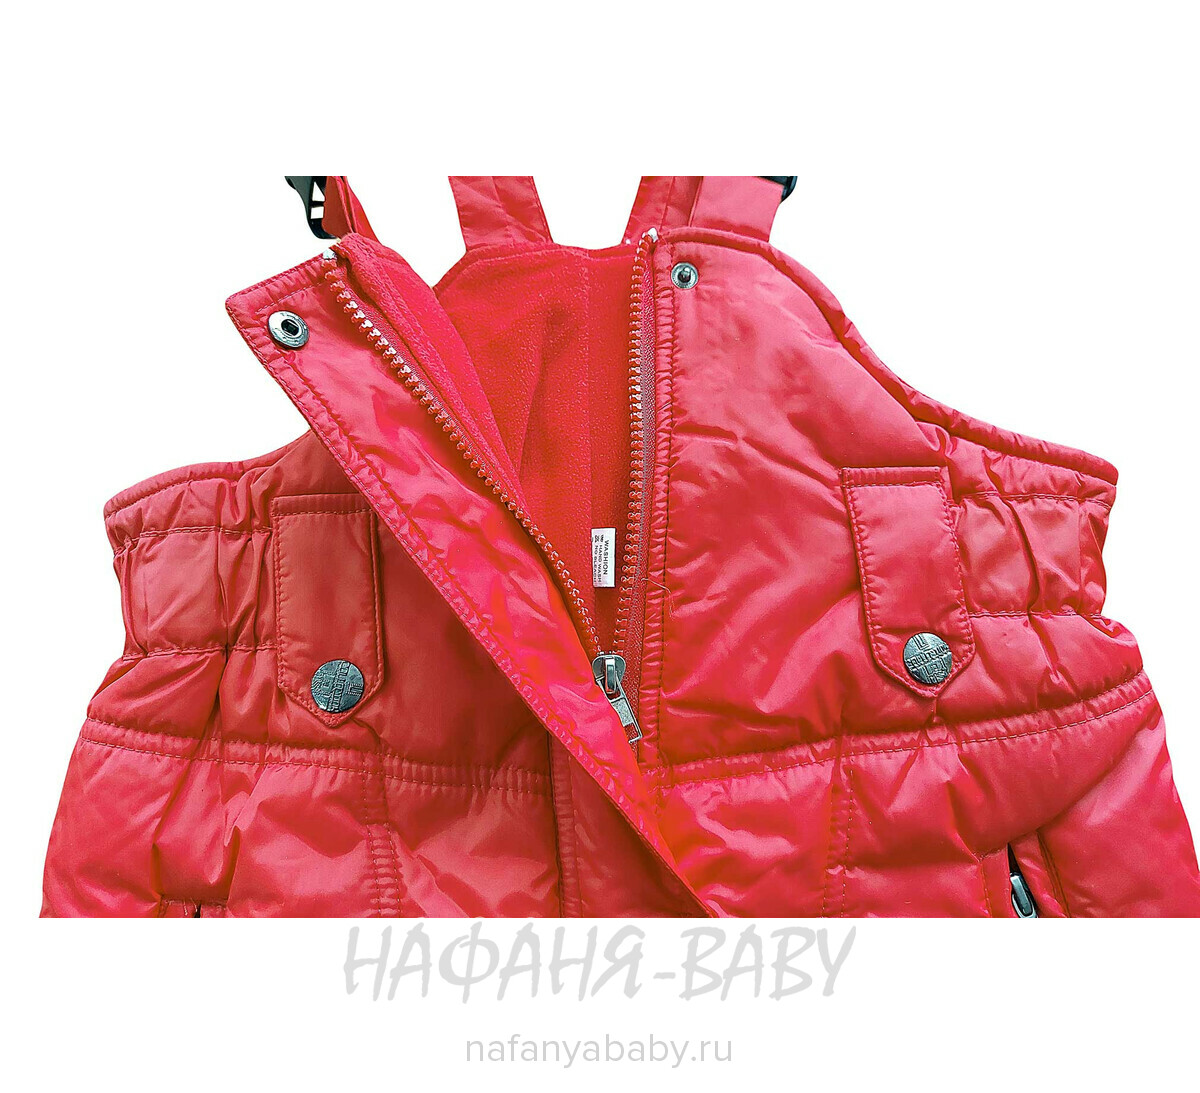 Детский зимний полукомбинезон, купить в интернет магазине Нафаня. арт: 020, цвет красный